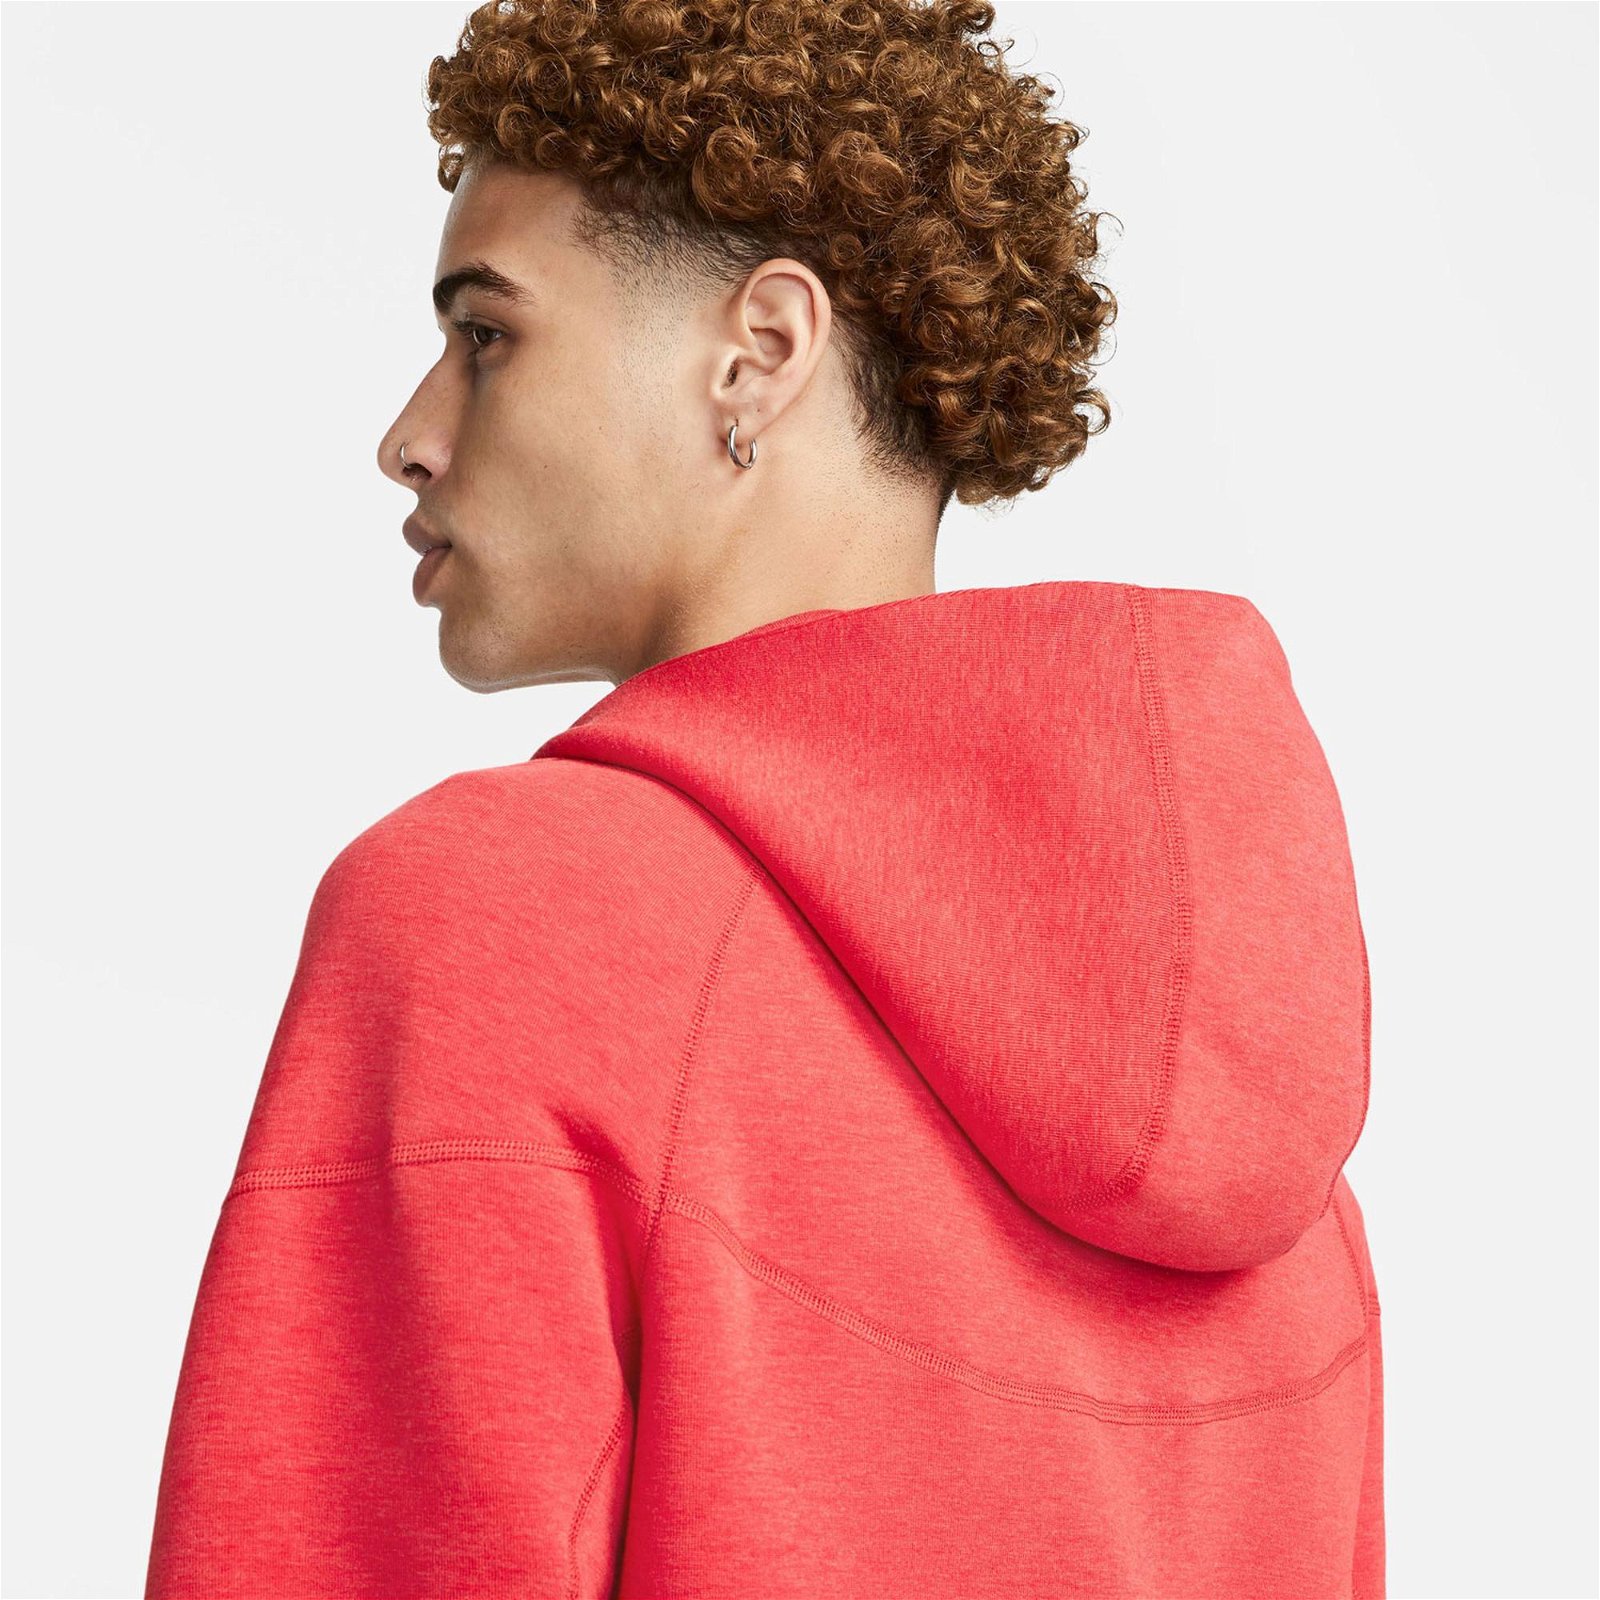 Nike Tech Fleece Erkek Kırmızı Sweatshirt